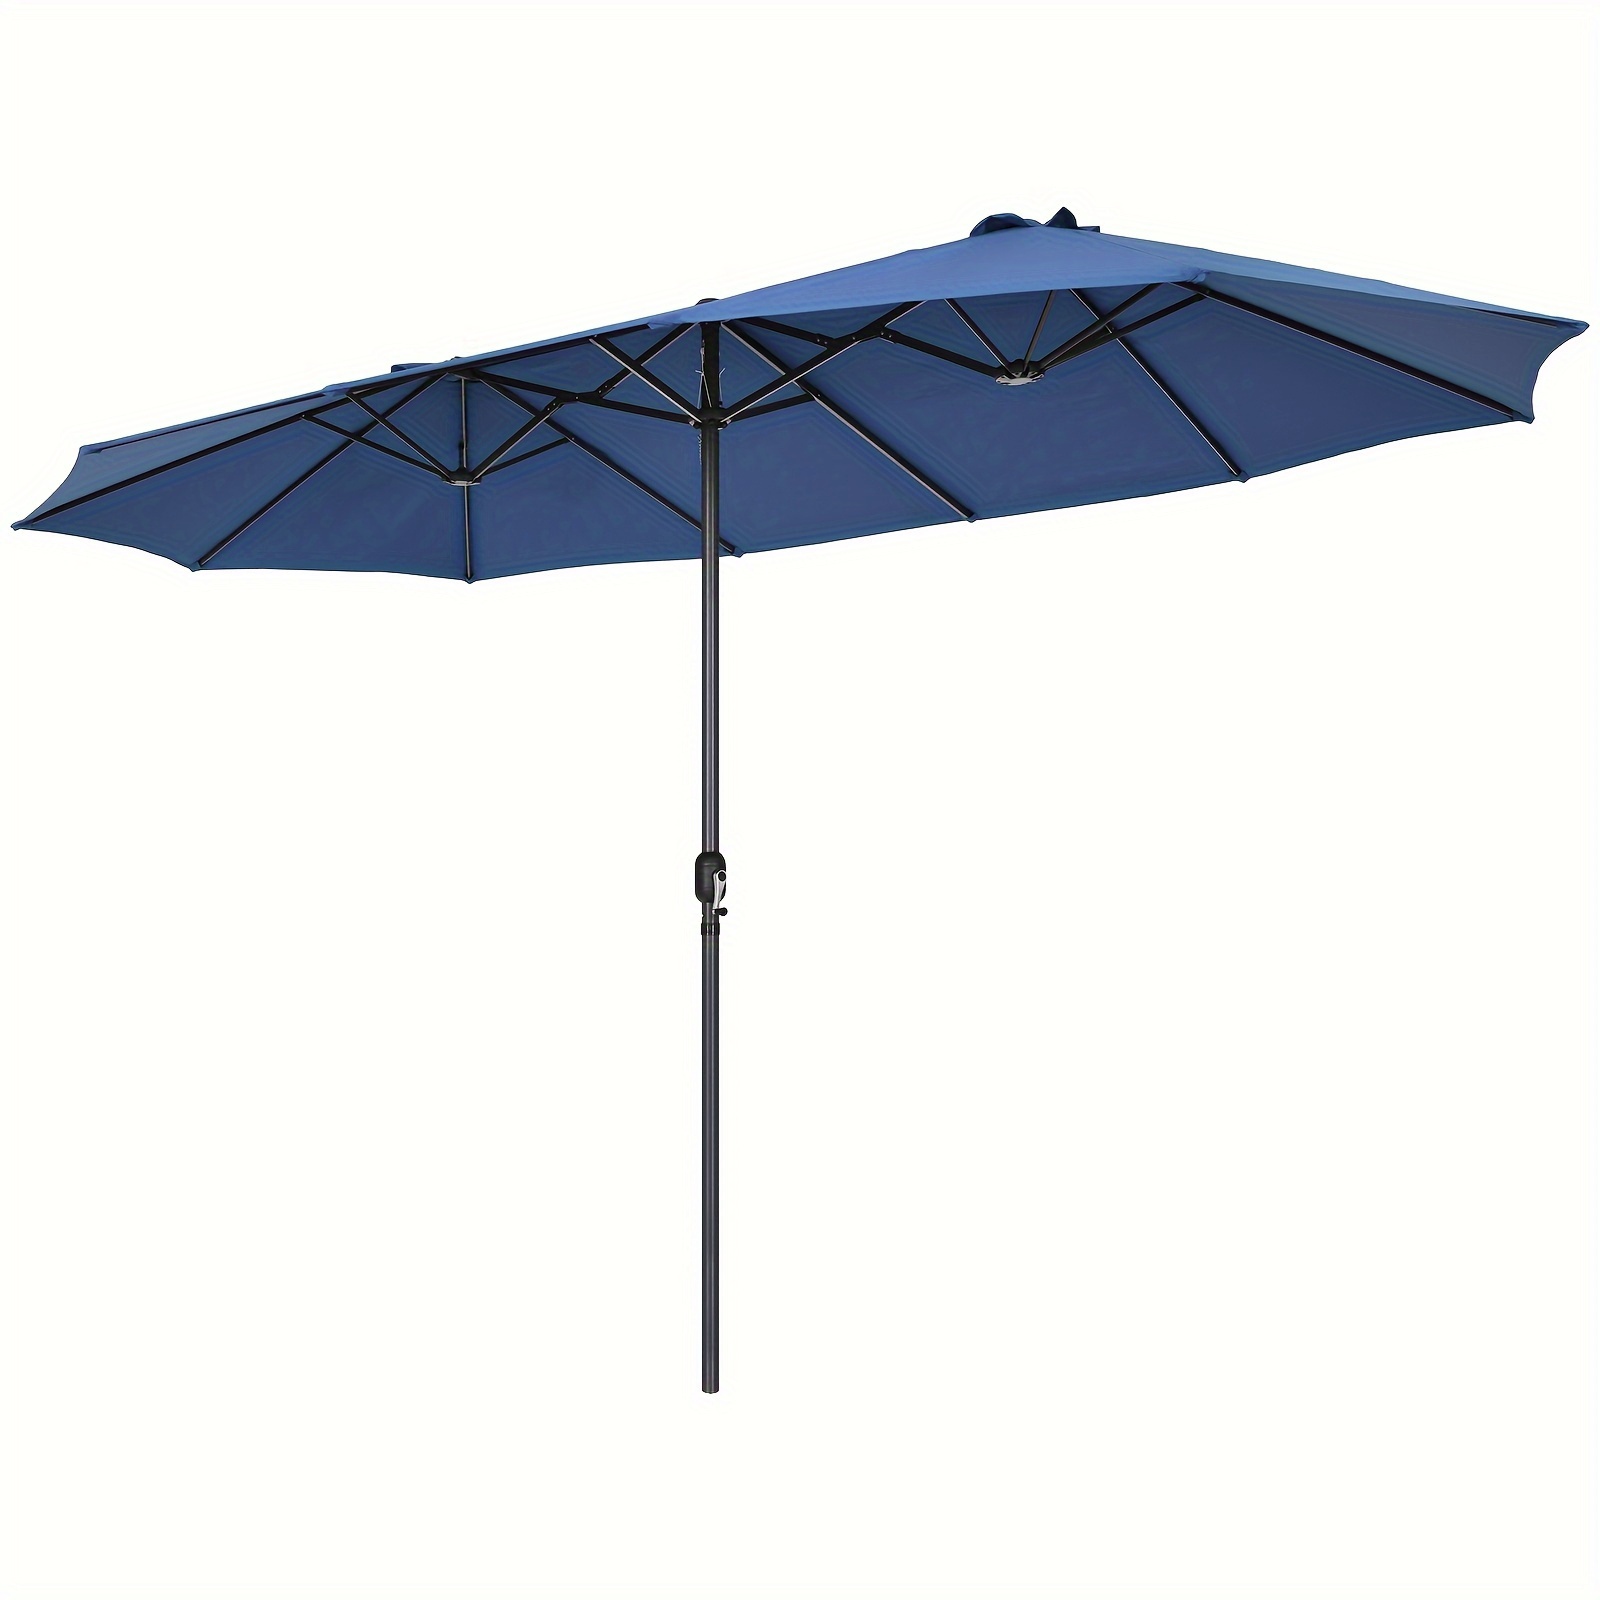 

1pc 15ft Patio Double-sided Umbrella, Outdoor Garden Market Umbrella With Crank, Sun Shade, Navy Blue